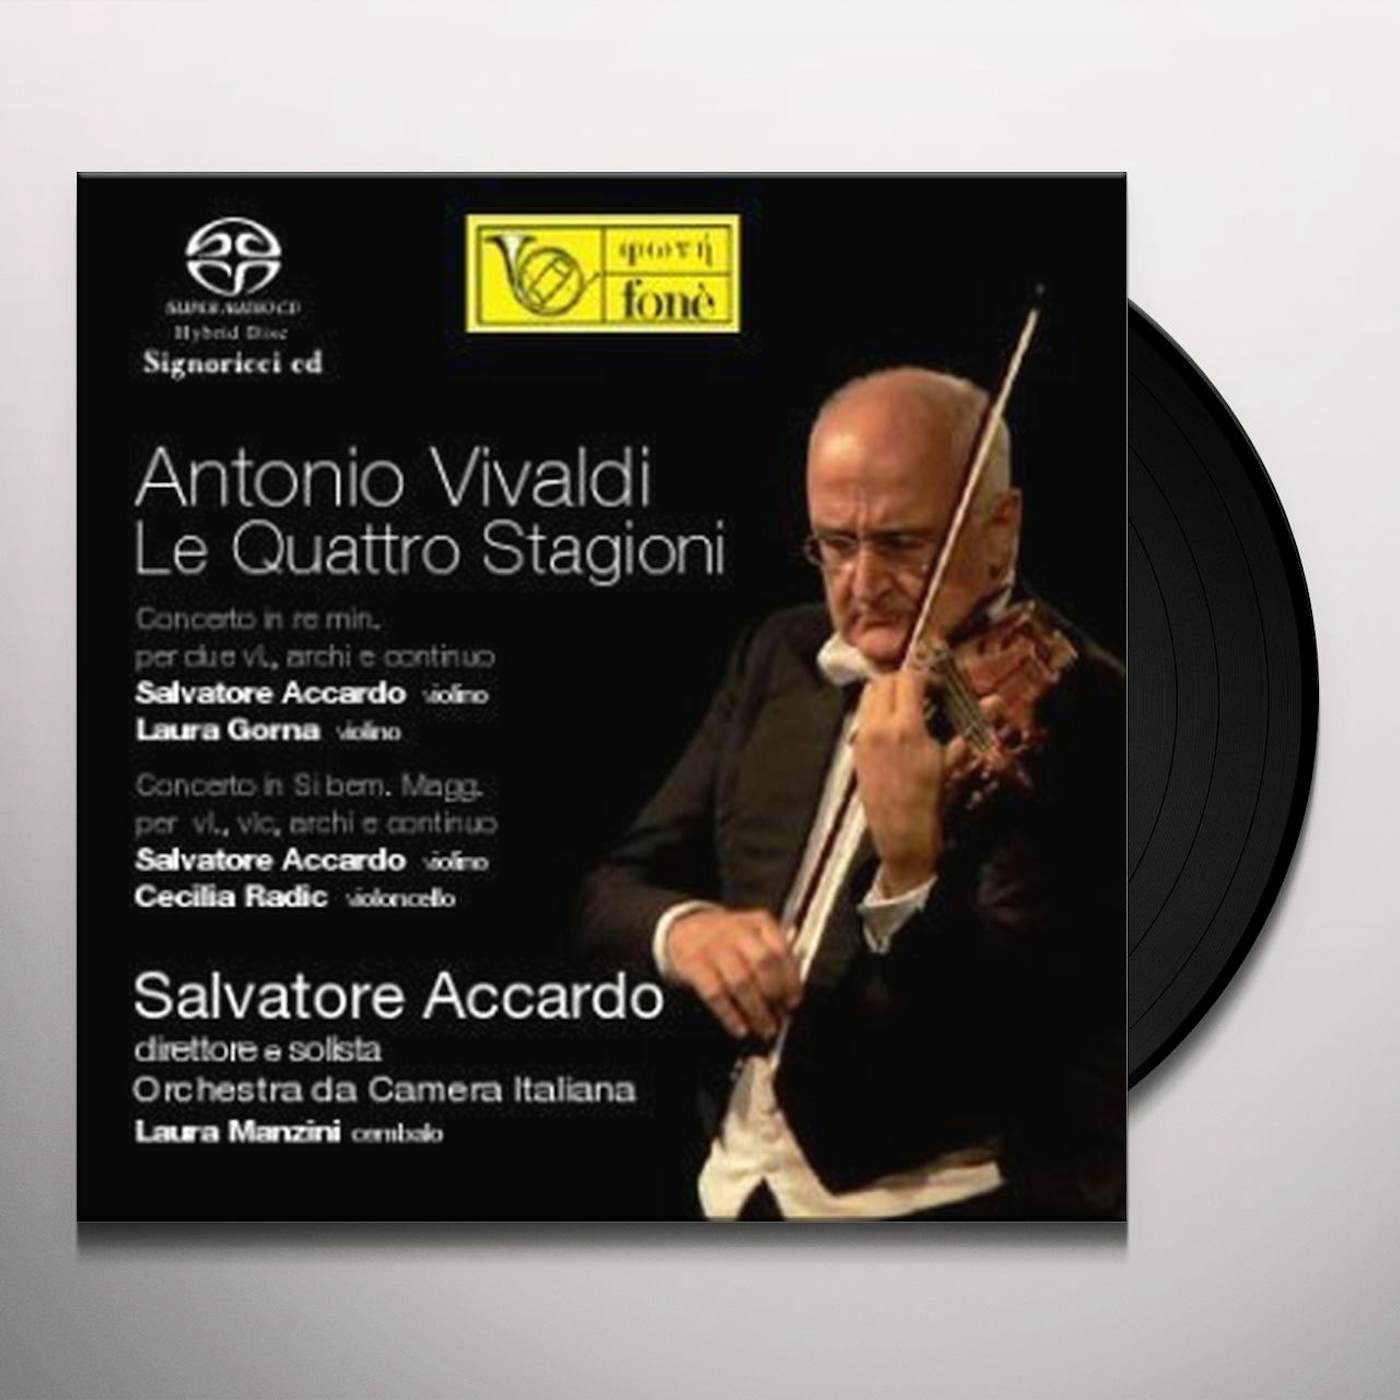 Salvatore Accardo ORCHESTRA DA CAMERA ITALIANA Vinyl Record